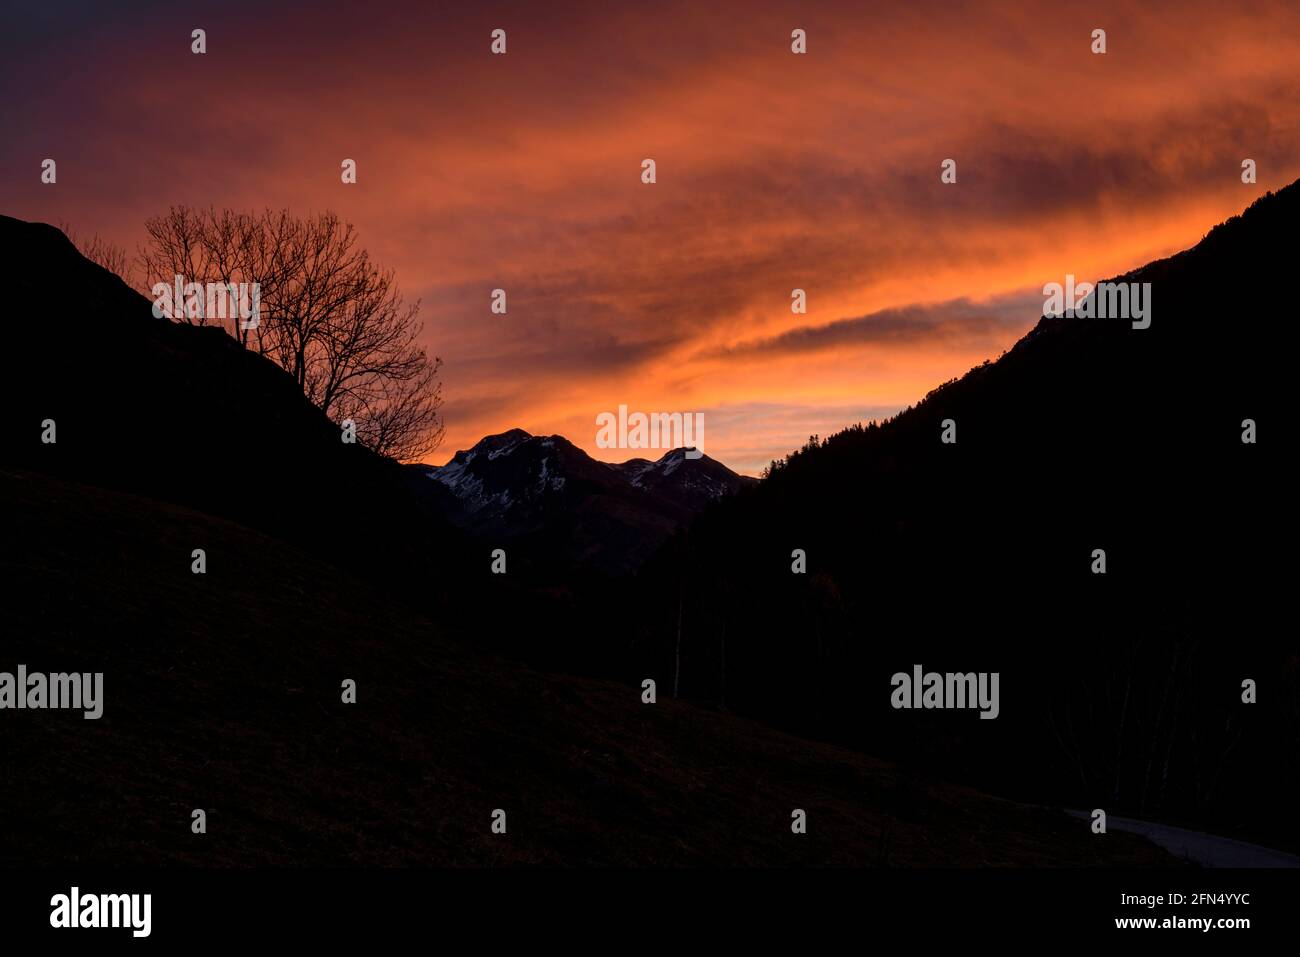 Red sunrise in the Varradòs Valley, in autumn (Aran Valley, Catalonia, Spain, Pyrenees) ESP: Amanecer rojizo en el Valle de Varradòs, en otoño, España Stock Photo